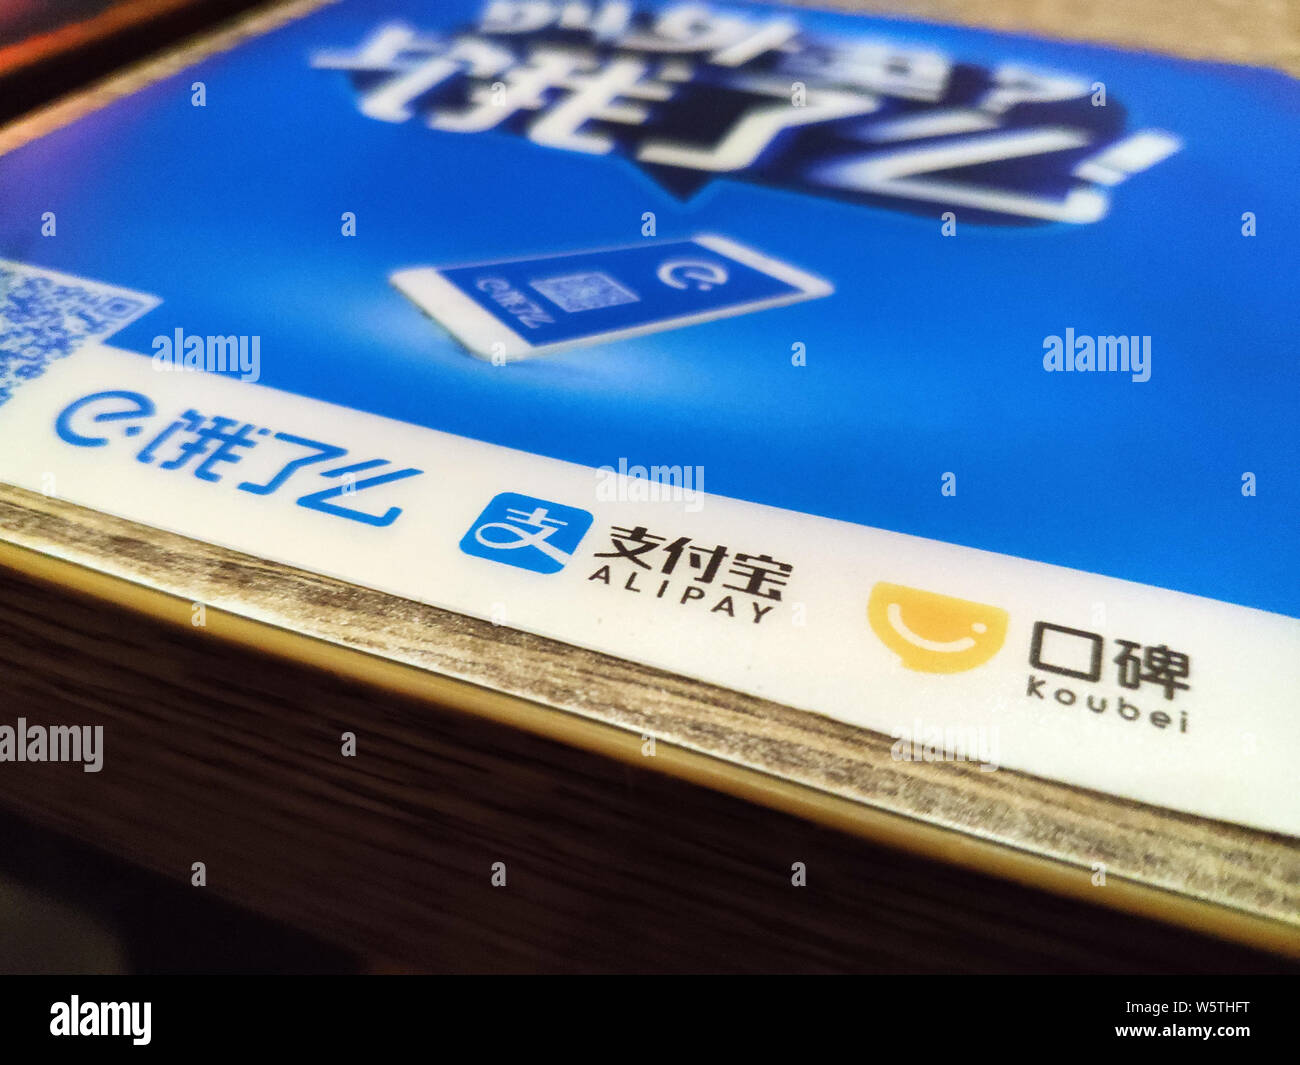 ------ Logos der chinesischen Essen Lieferung unternehmen Elé. Mir von Alibaba Group, Alibaba online zu offline (O2O) Service Plattform Koubei und Chinesische gesichert Stockfoto